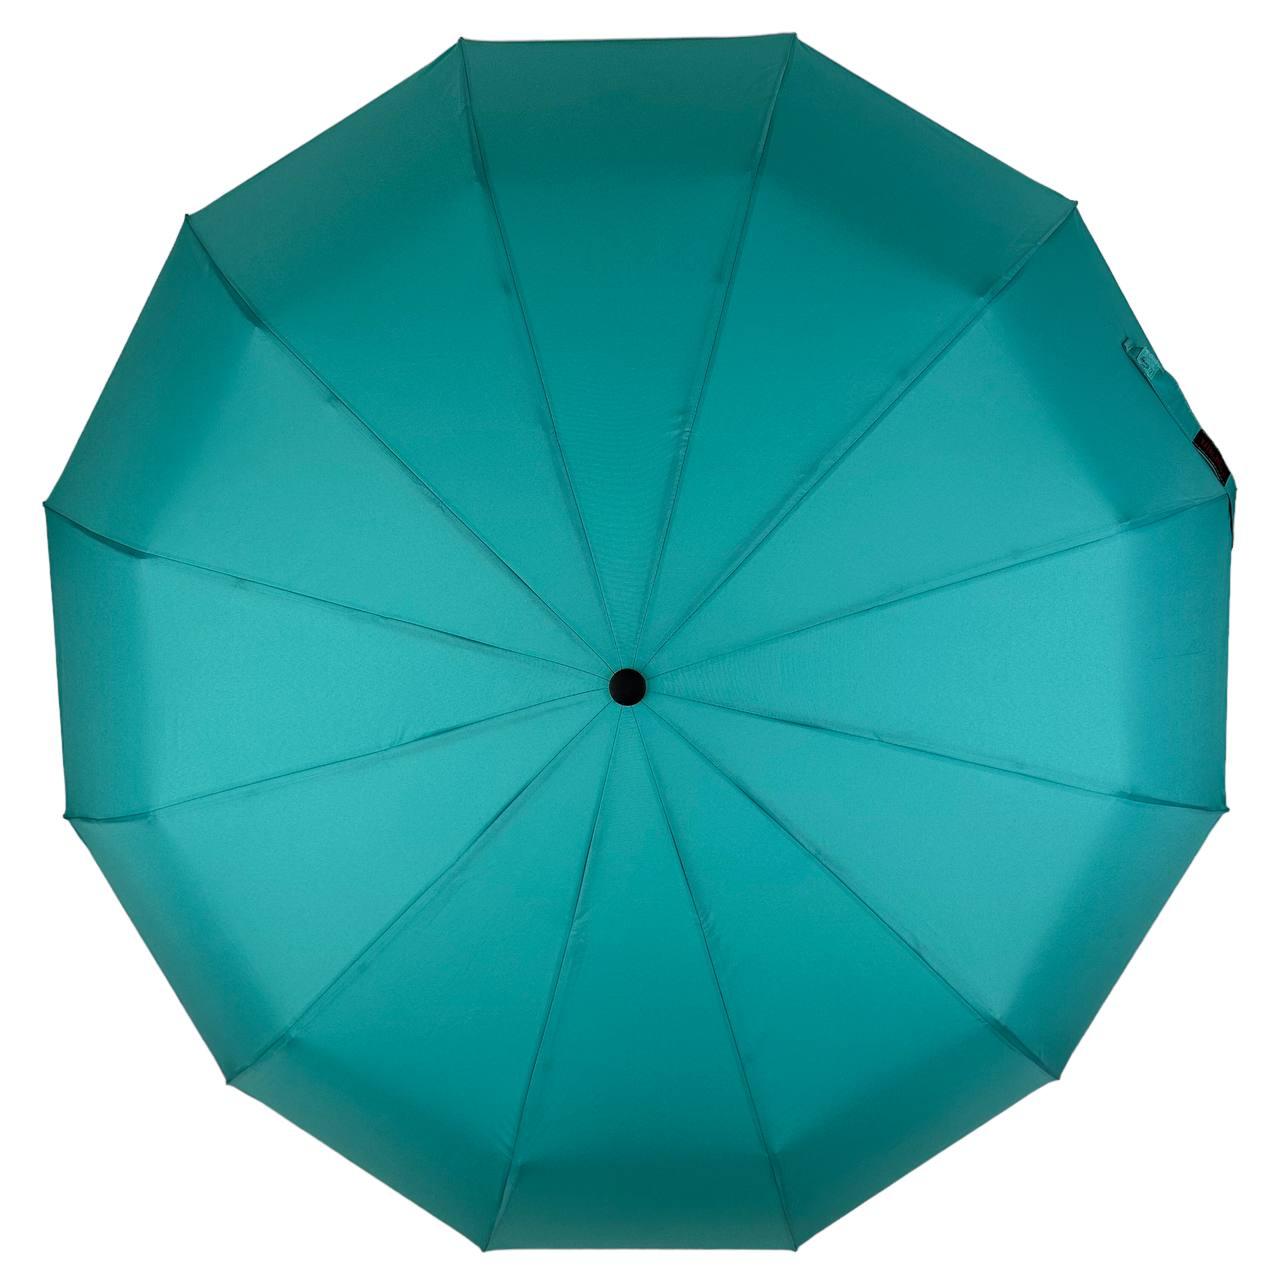 Складана парасолька повний автомат Toprain 105 см бірюзова - фото 5